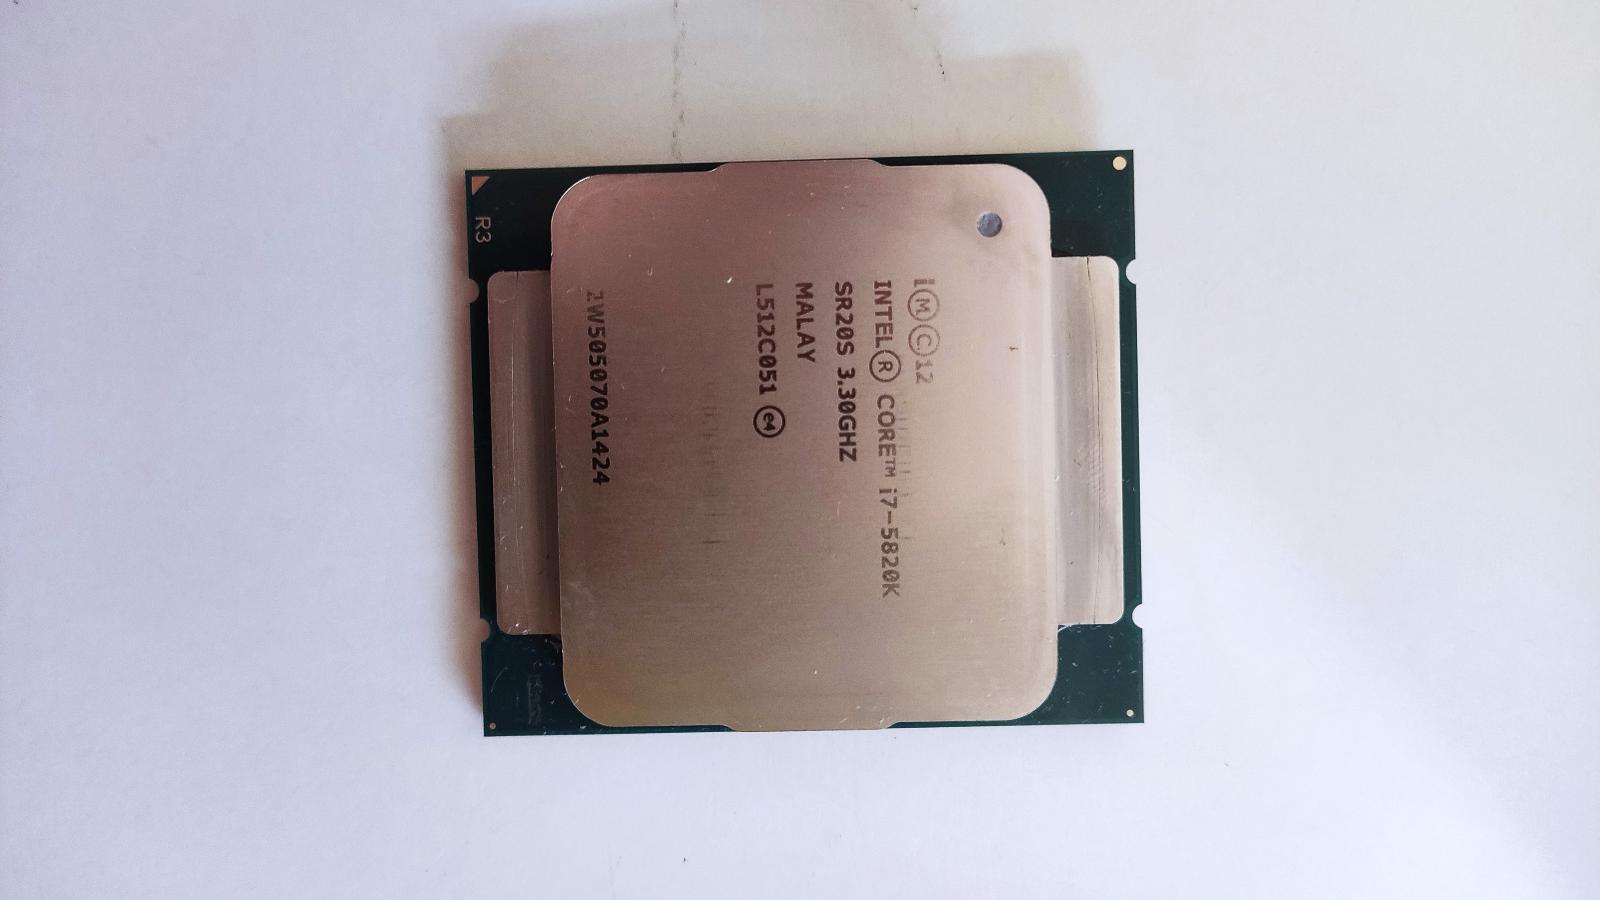 Procesor Intel i7-5820K - Počítače a hry